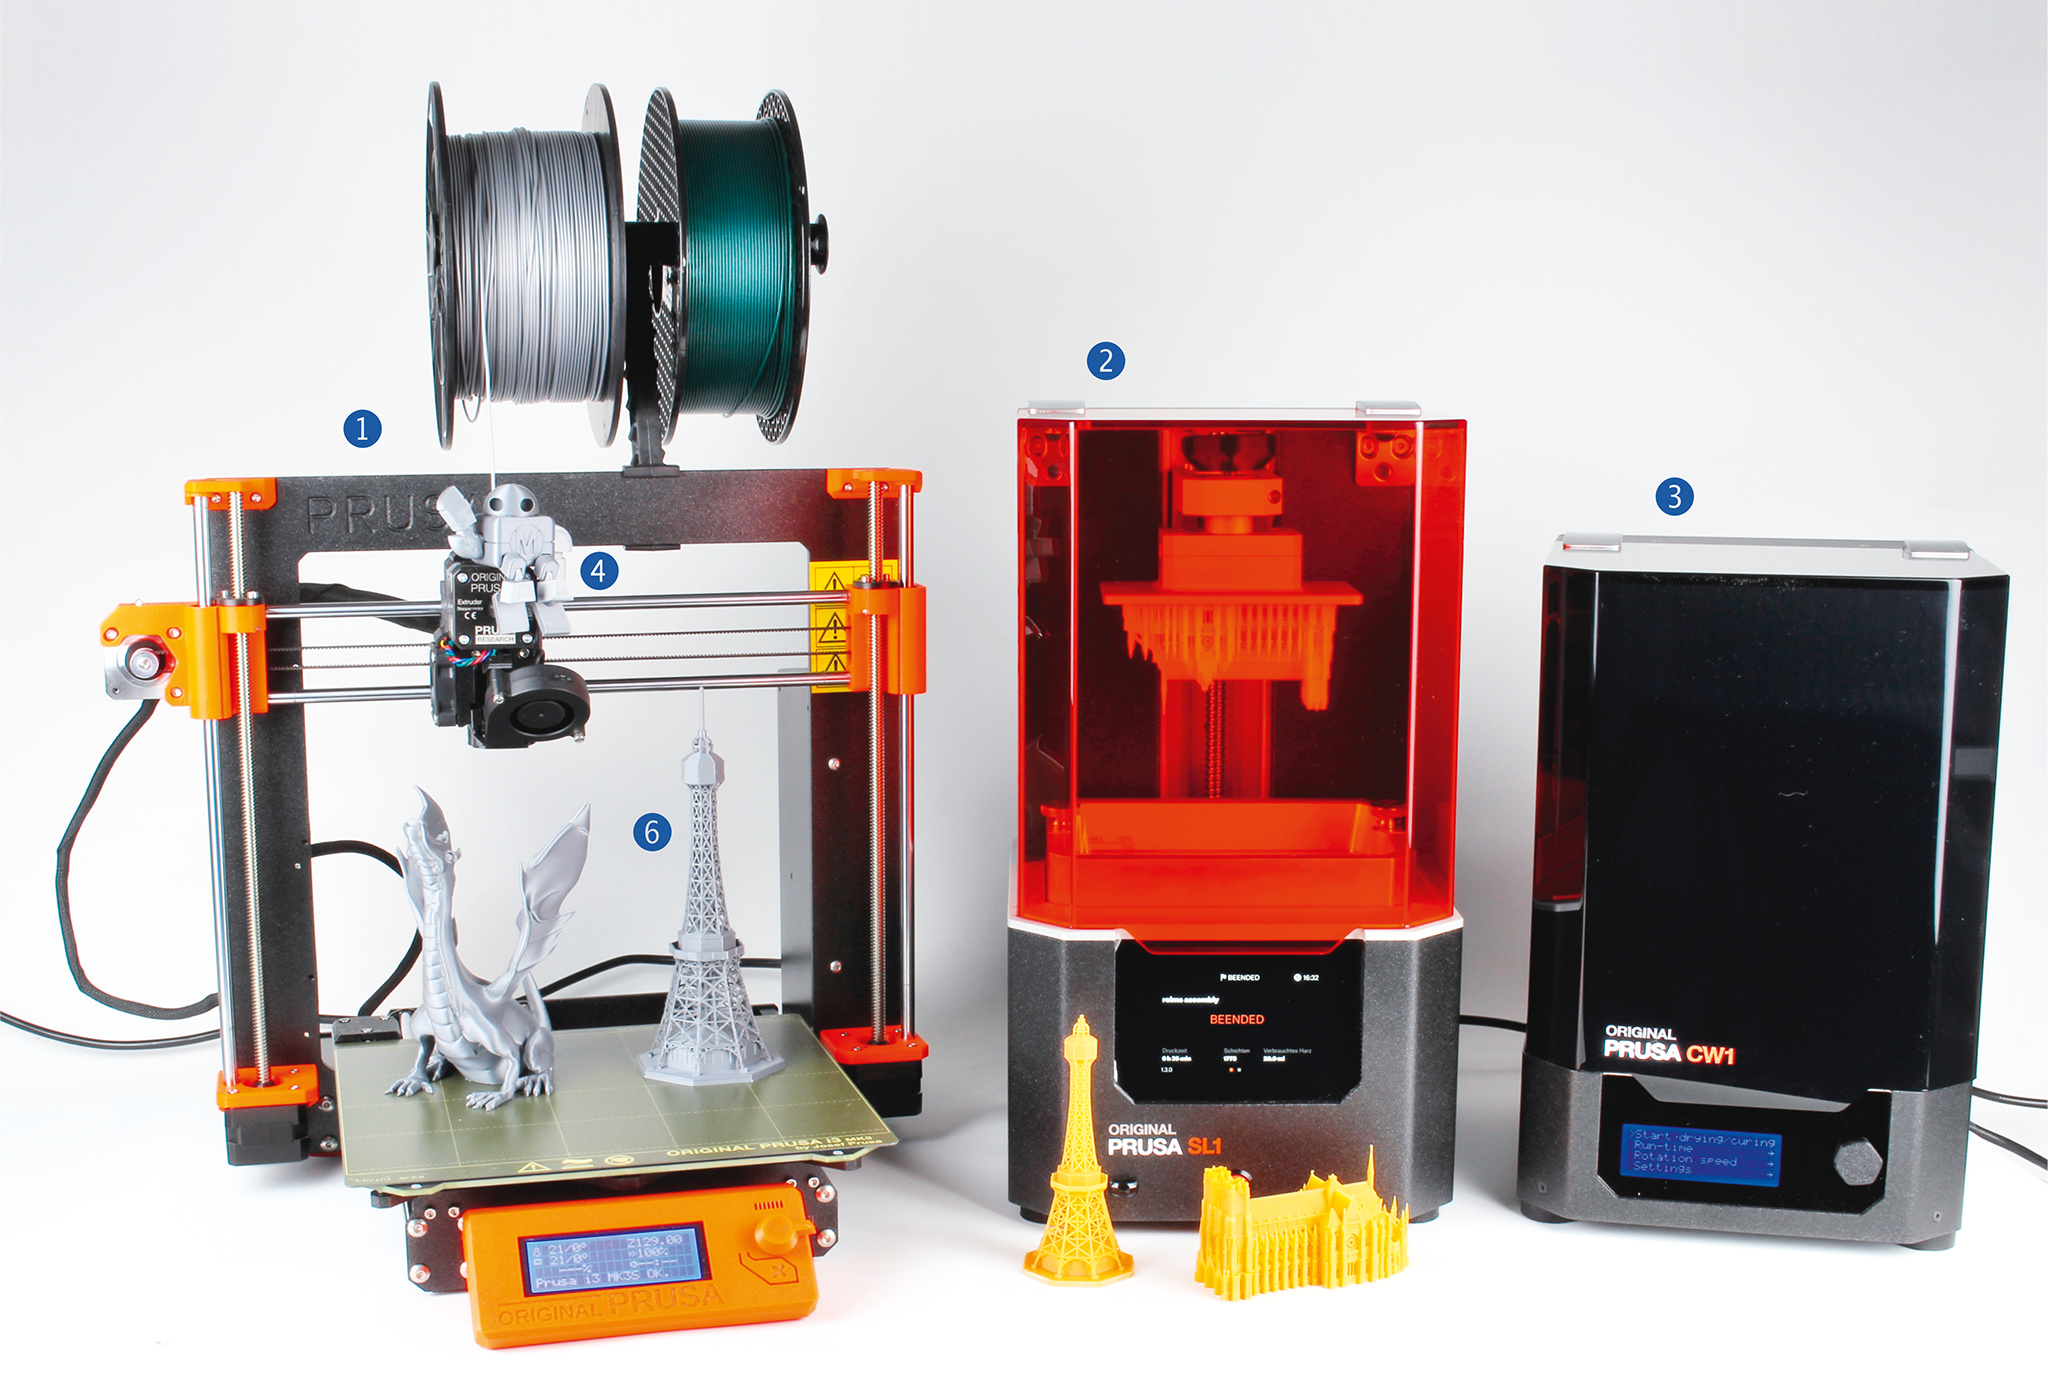 SL1 und i3 MK3S 3D-Drucker von Prusa | Make Magazin | Heise Magazine